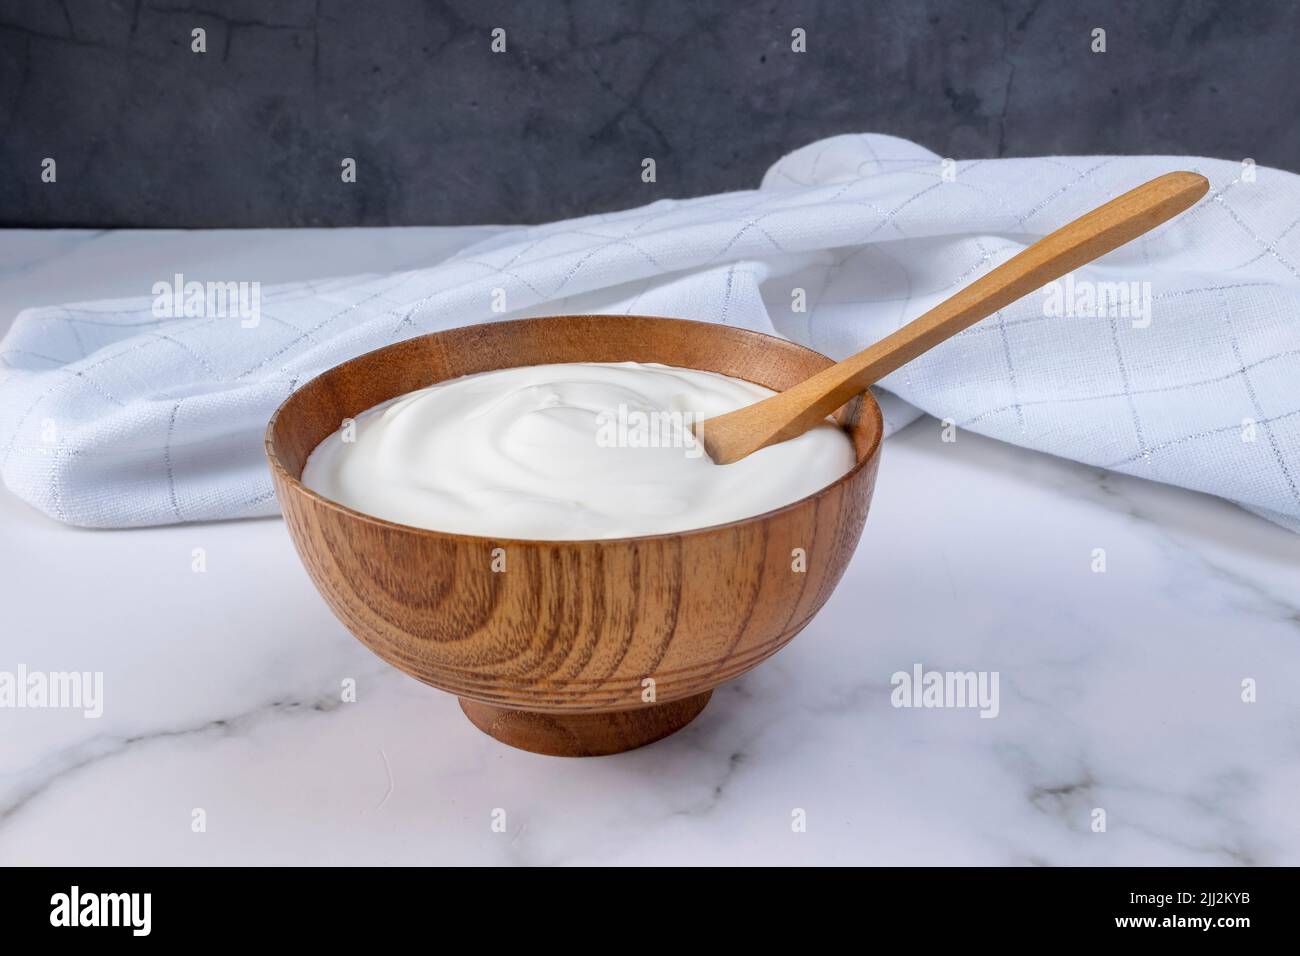 Une portion de yaourt grec dans un bol en bois prêt à être servi. Concept de nourriture saine pour le régime. Banque D'Images